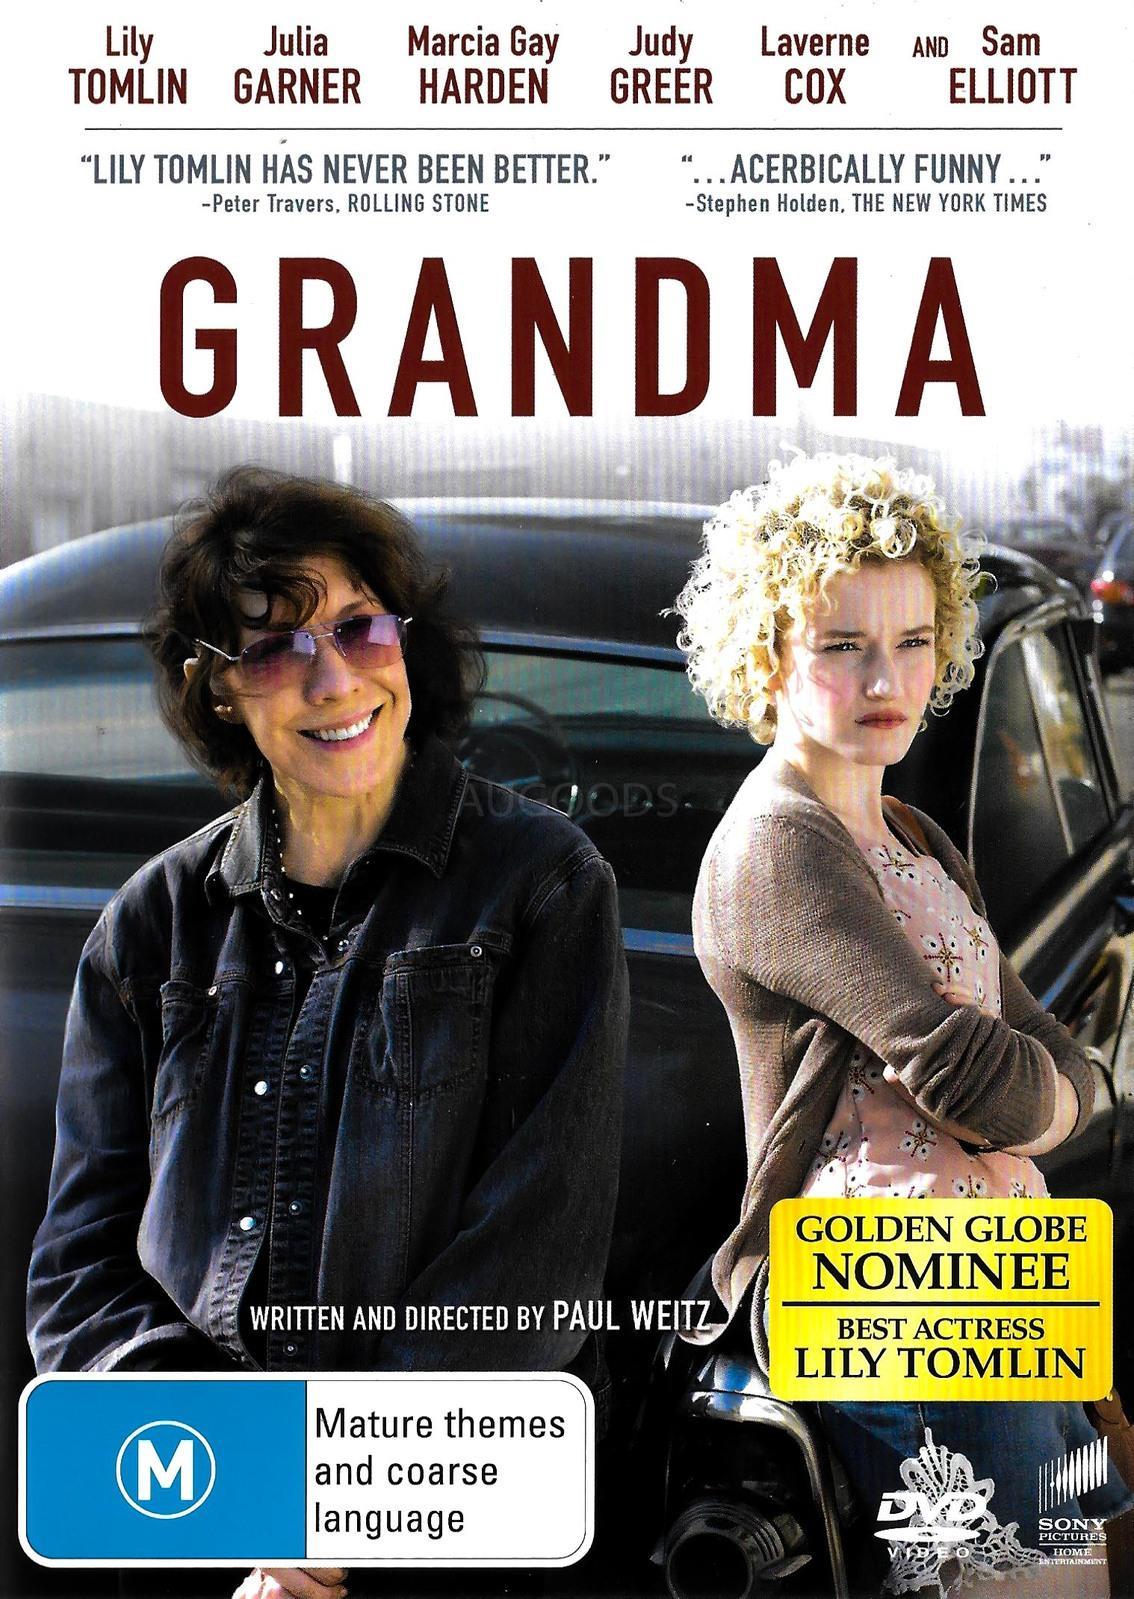 Grandma DVD